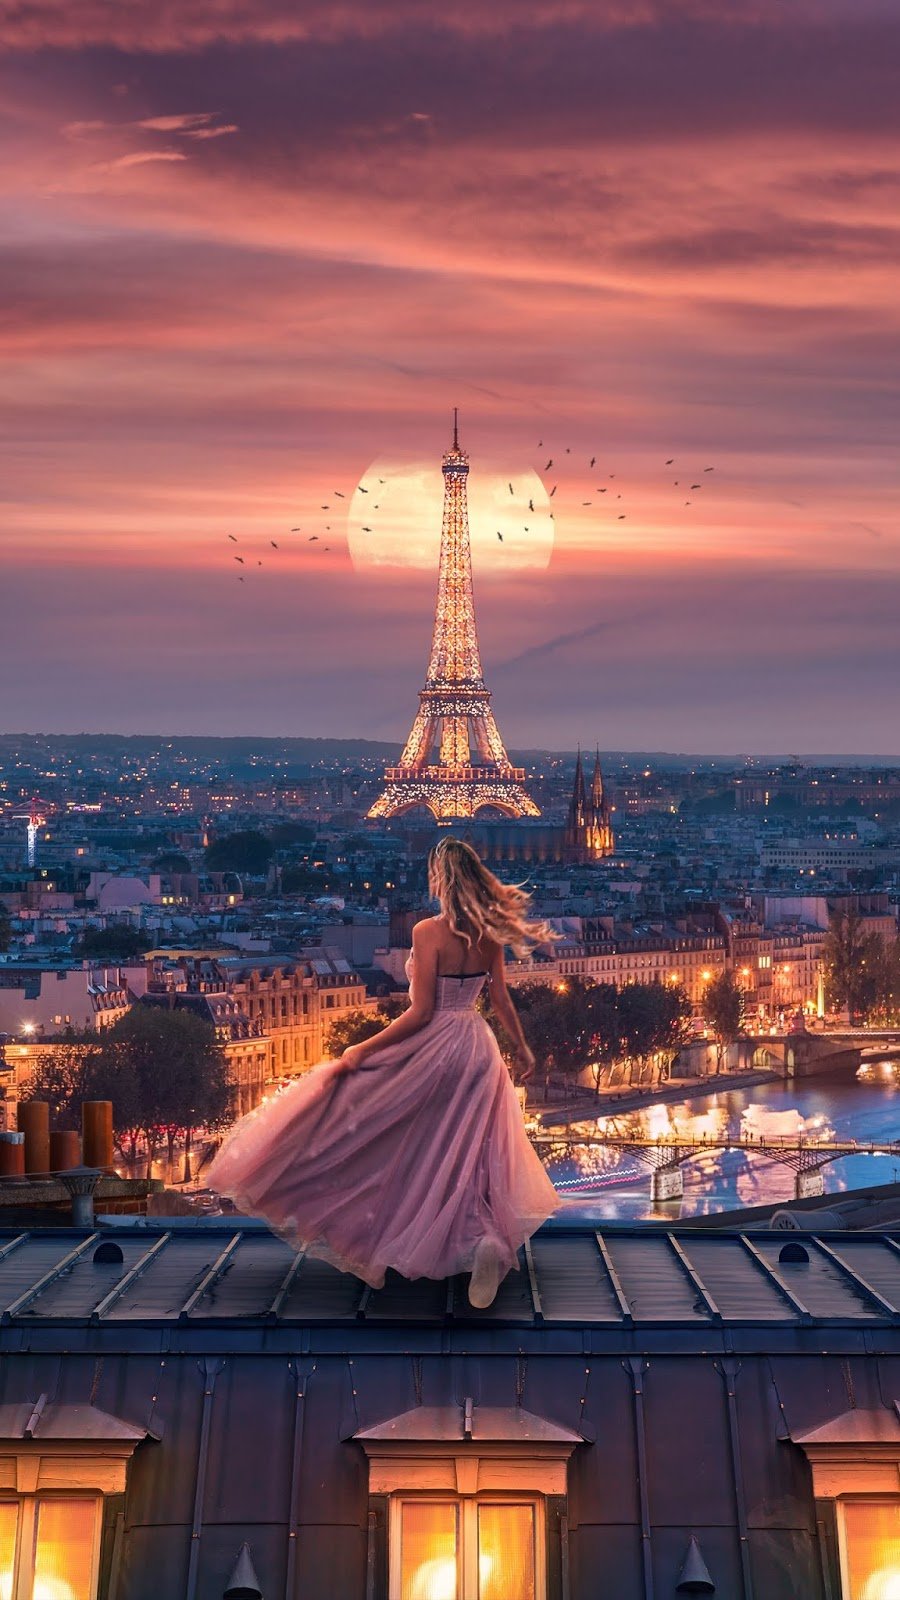 Girl in Paris by CptGui